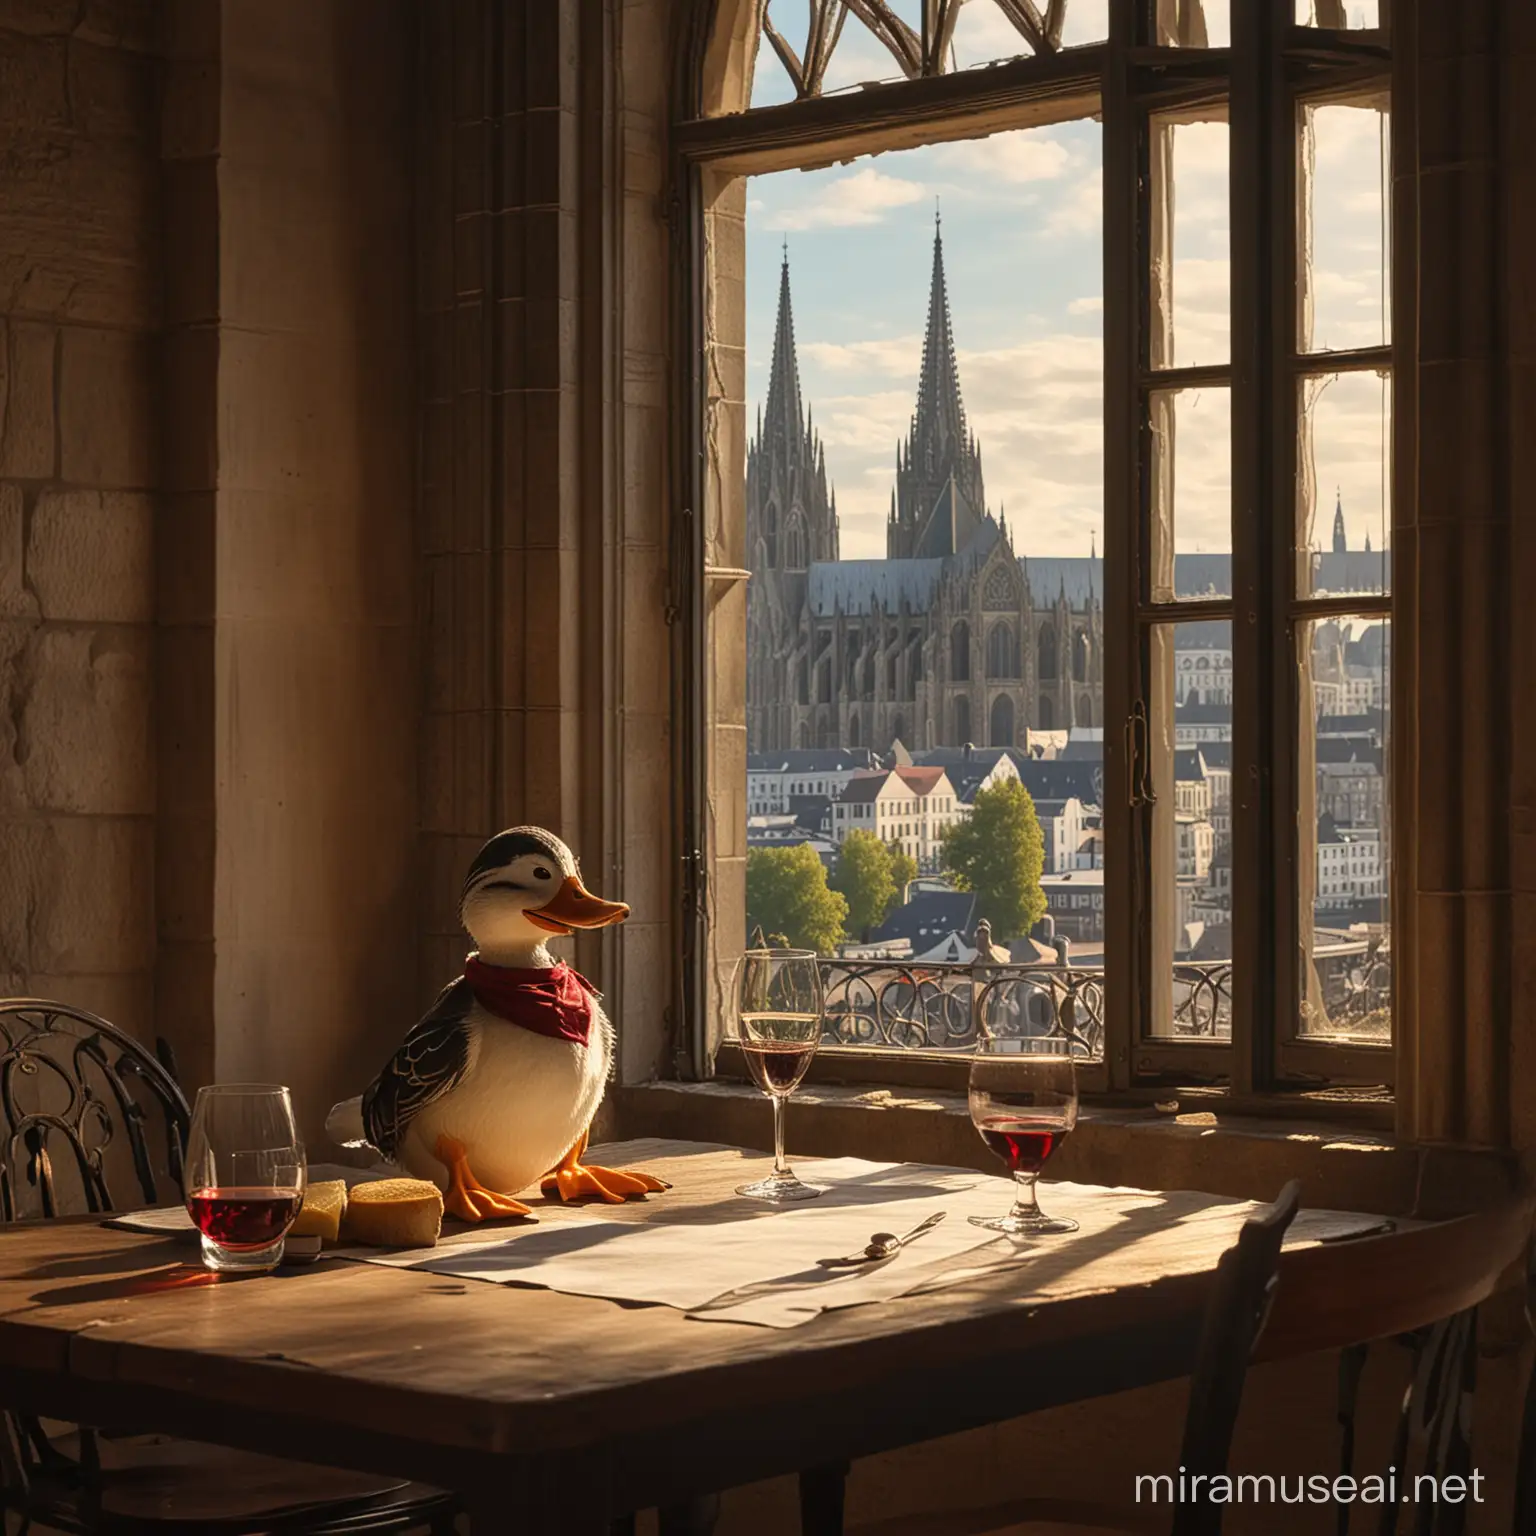 Dagobert Duck sitzt am Tisch und trinkt einen Wein, aus dem Fenster sieht man den Kölner Dom, lebendig, detailliert, Licht und Schatten